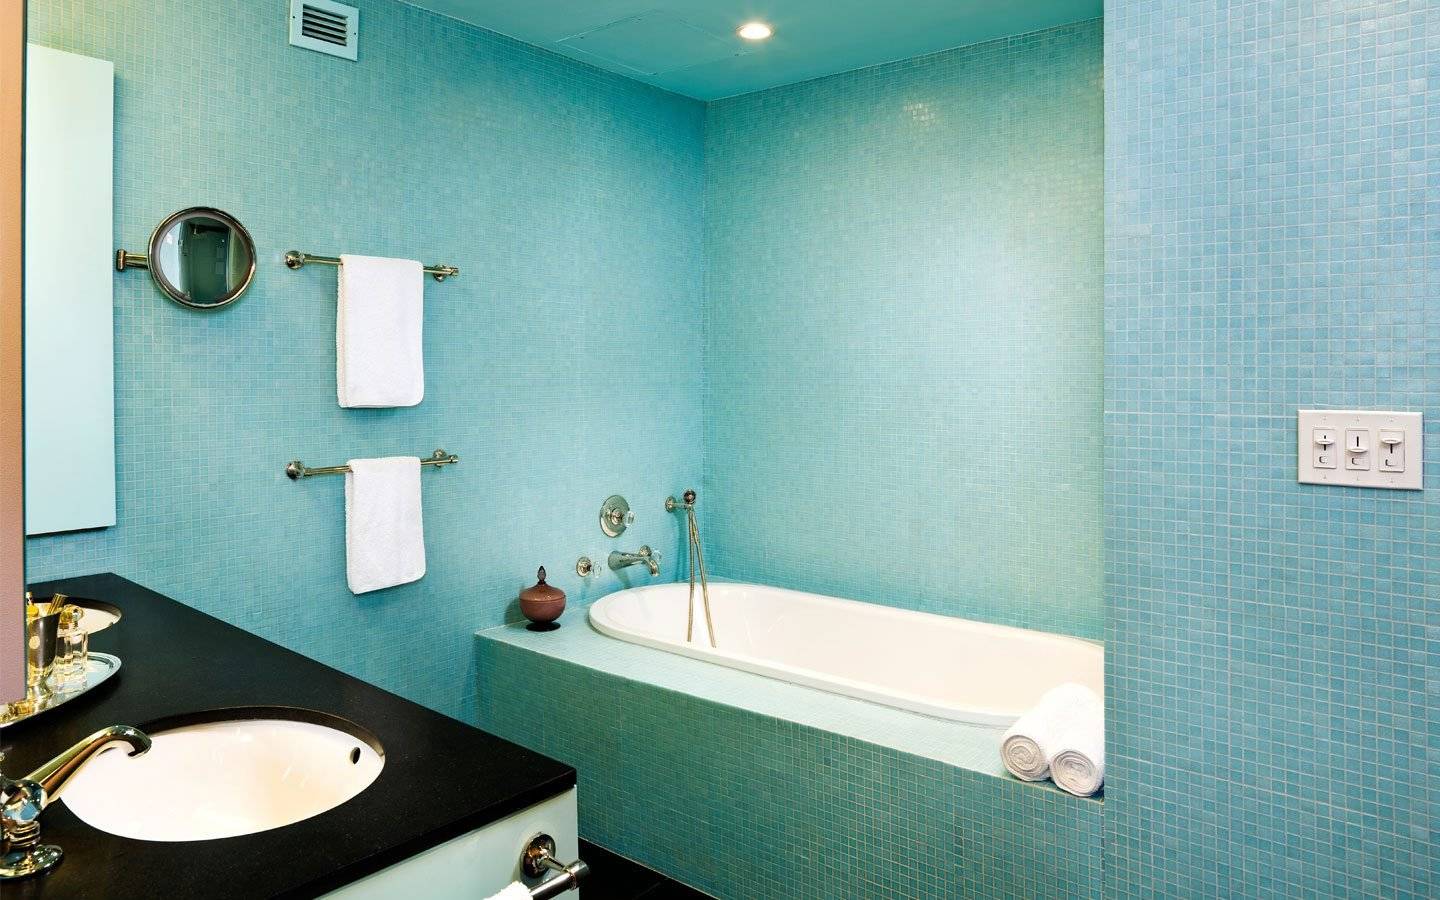 Водостойкая краска для ванной комнаты без запаха как выбрать